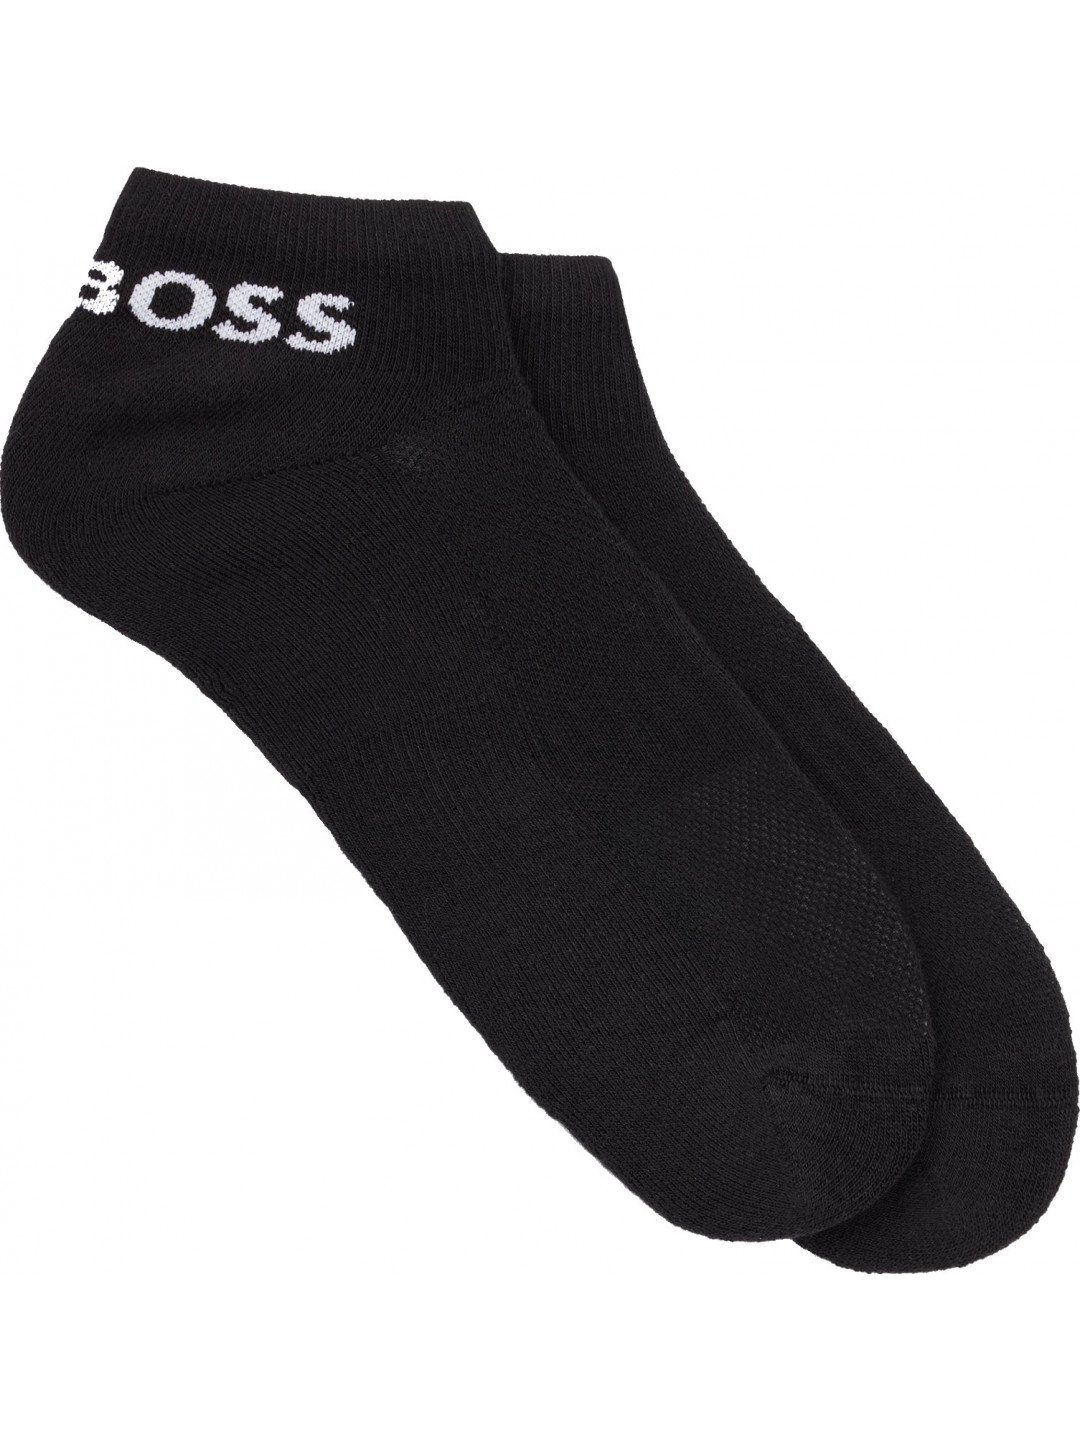 Hugo Boss 2 PACK – pánské ponožky BOSS 50469859-001 39-42